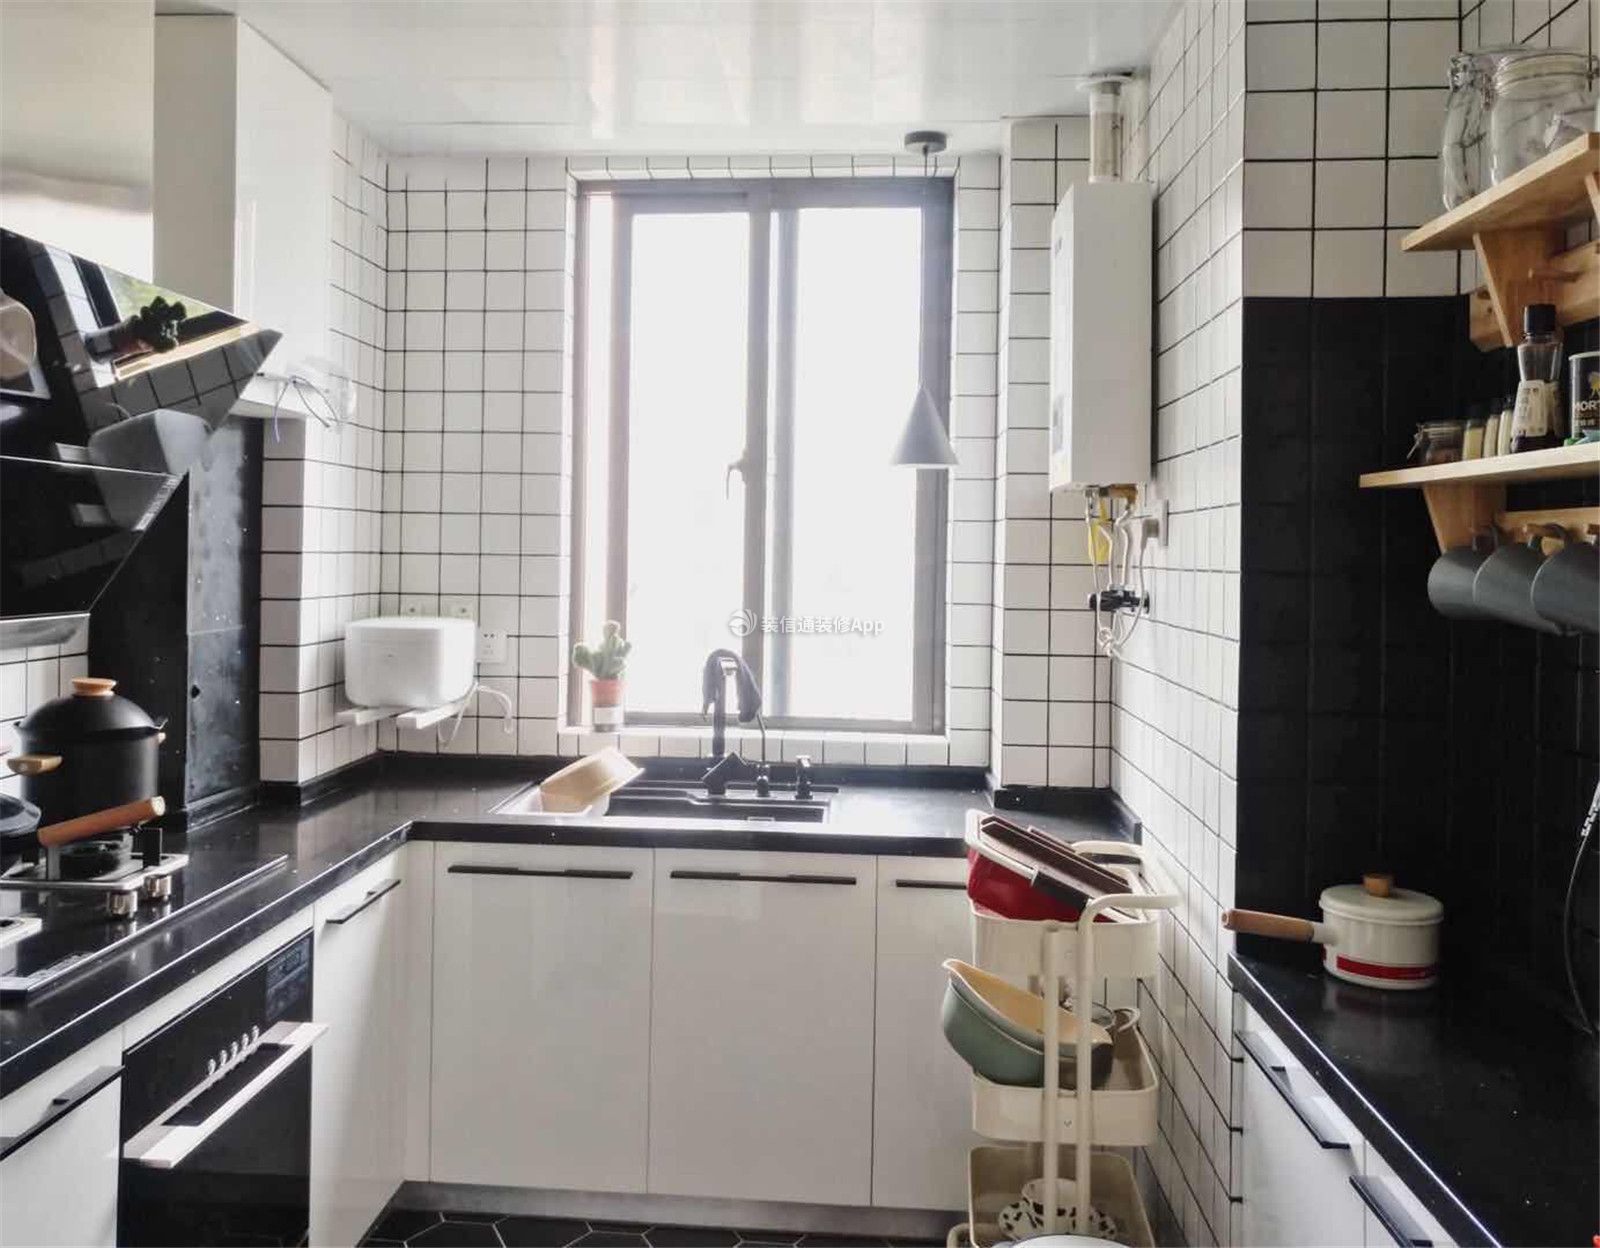 简约北欧风格四居室家庭厨房样板间图片